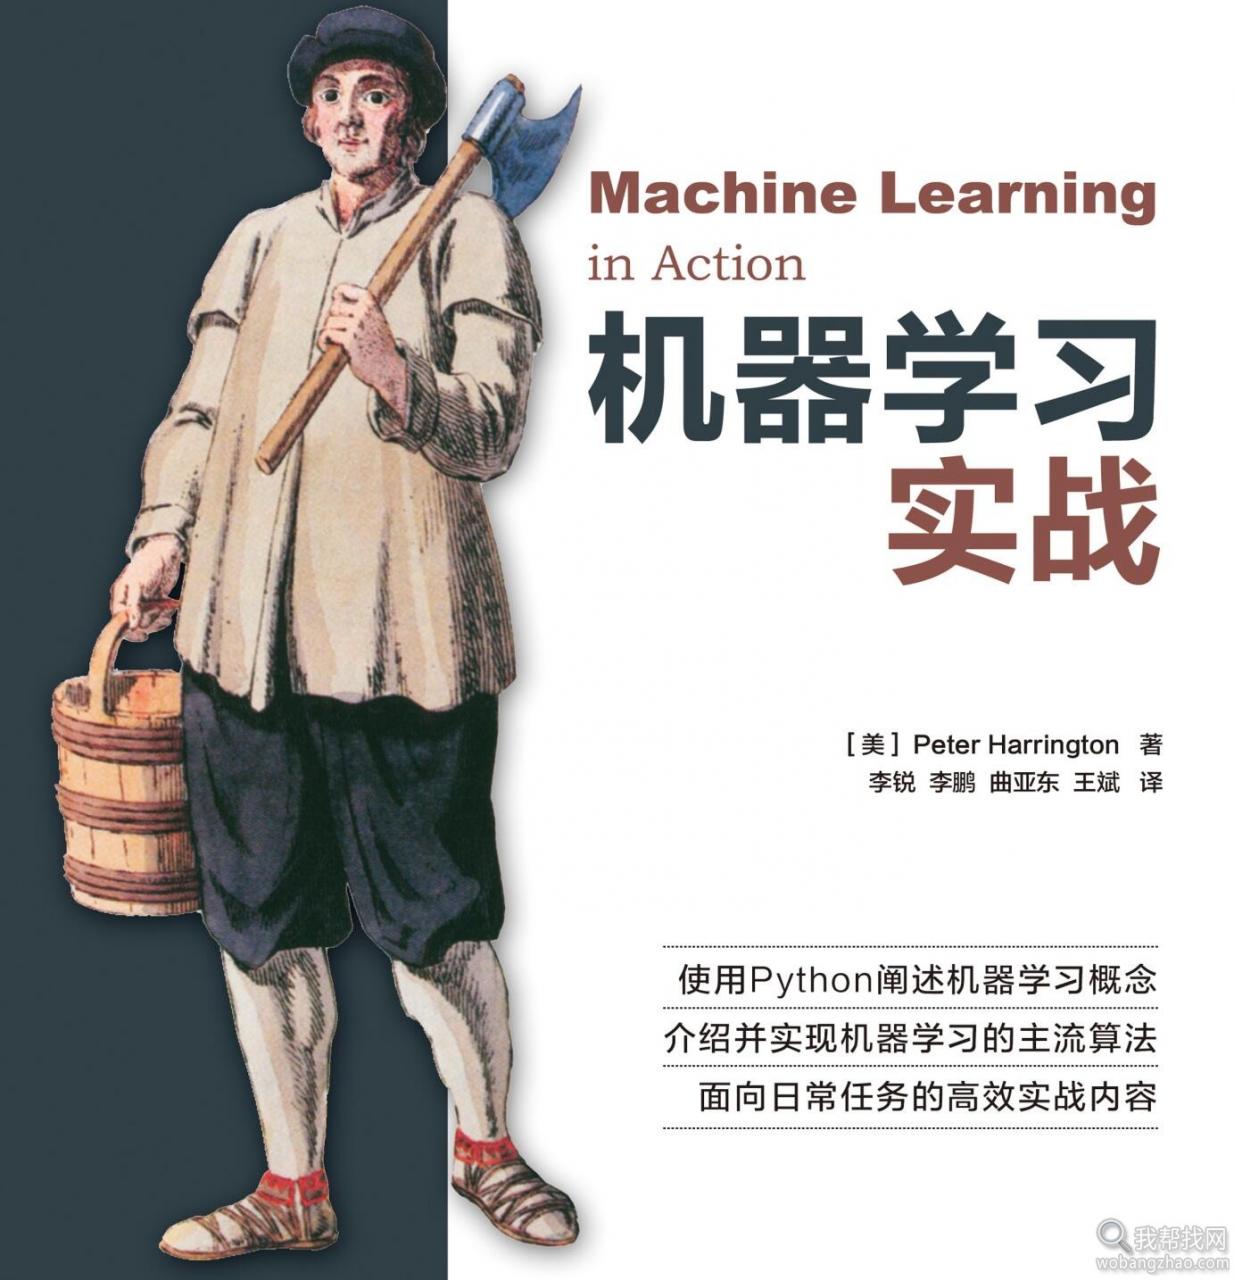 计算机软件技术丛书大全程序开发语言、UI交互设计与思维逻辑指南电子书打包